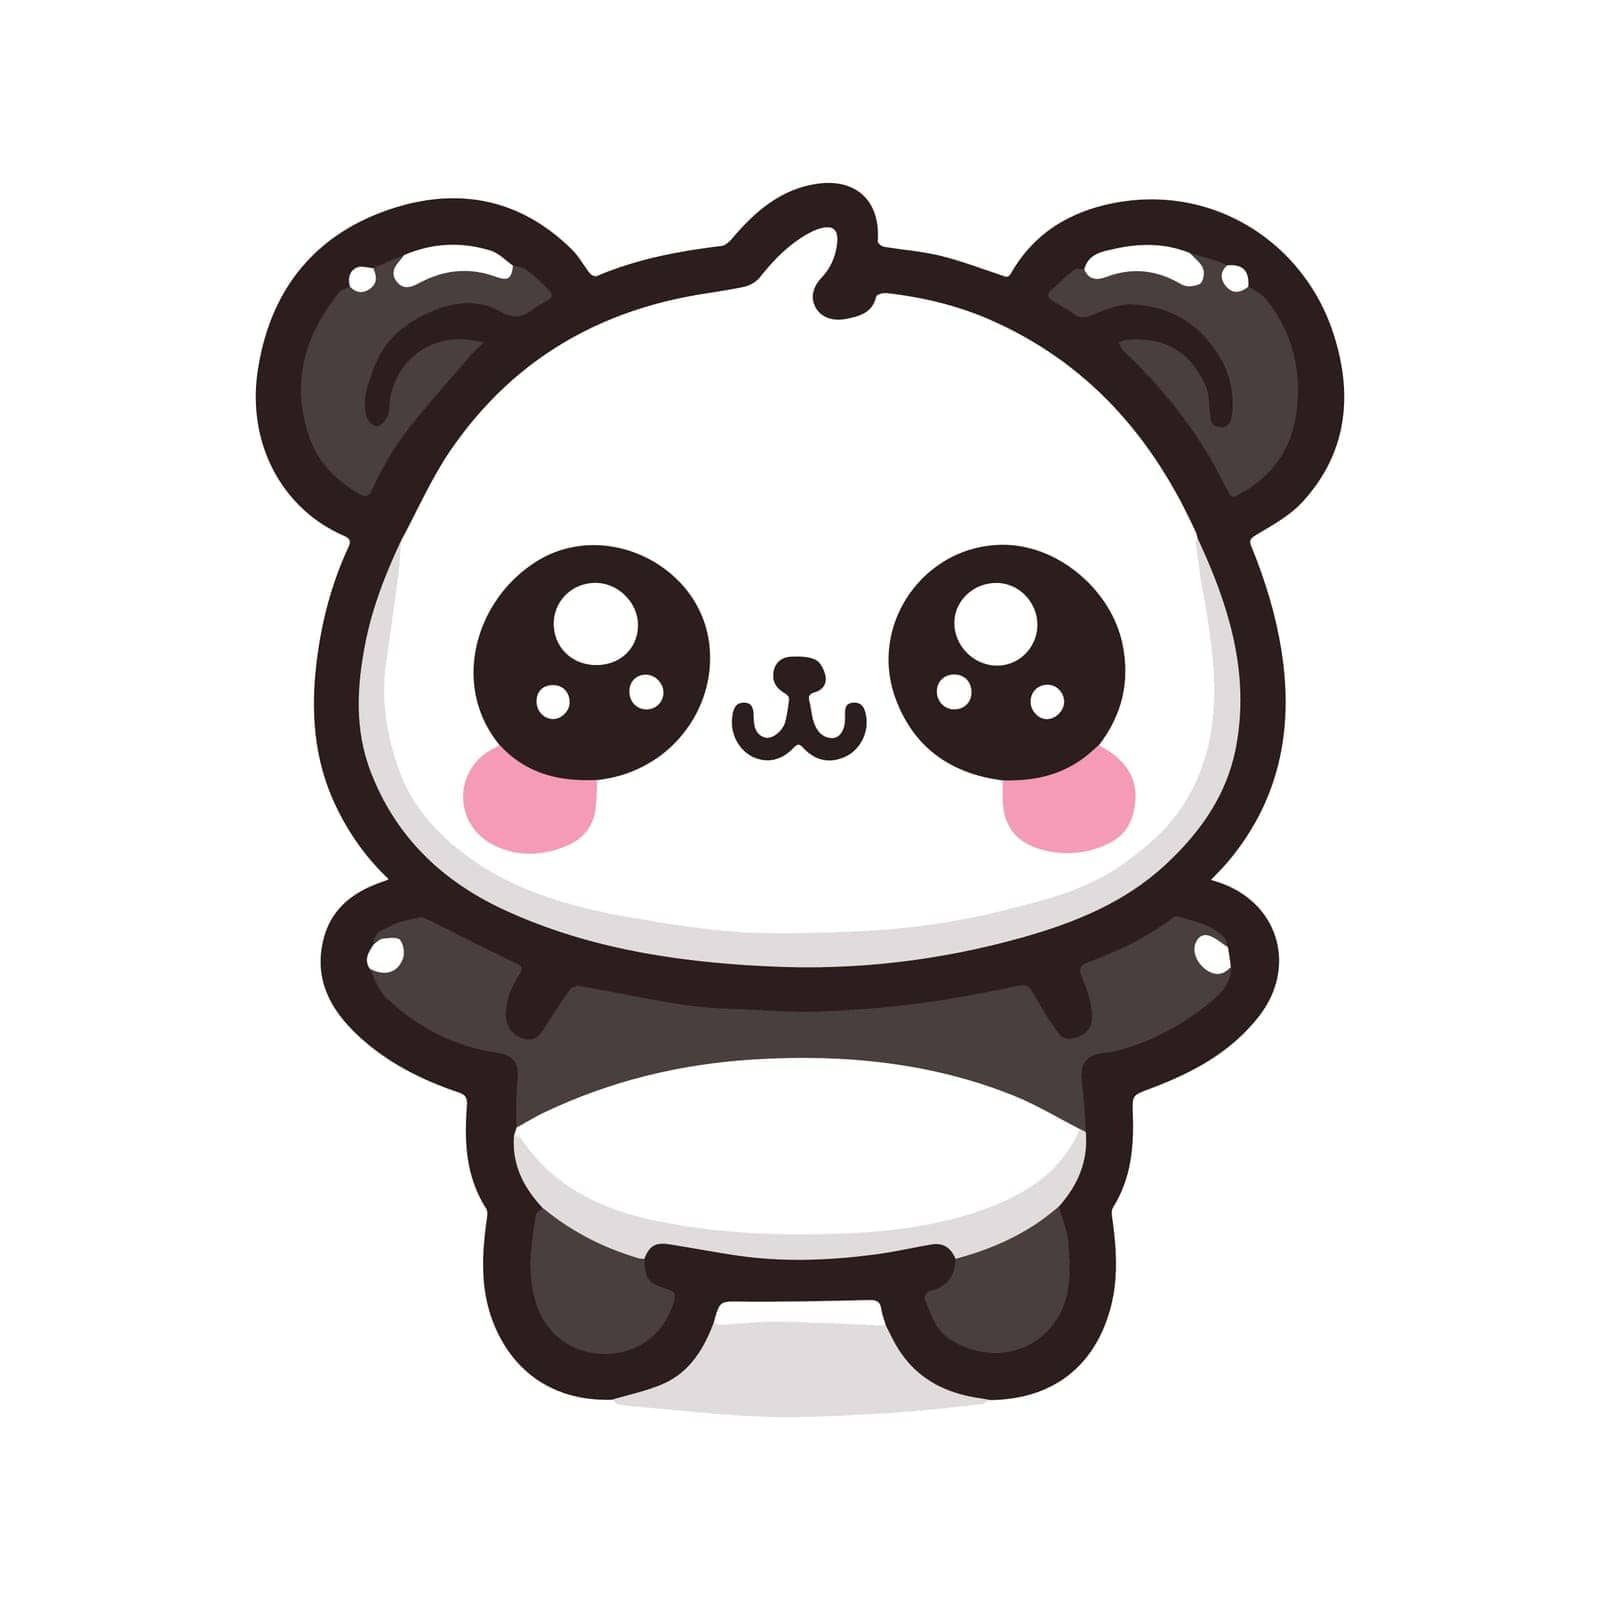 Cute Kawaii Panda Bear Mascot. Cartoon Funny Smiling Happy Panda Sticker. by iliris